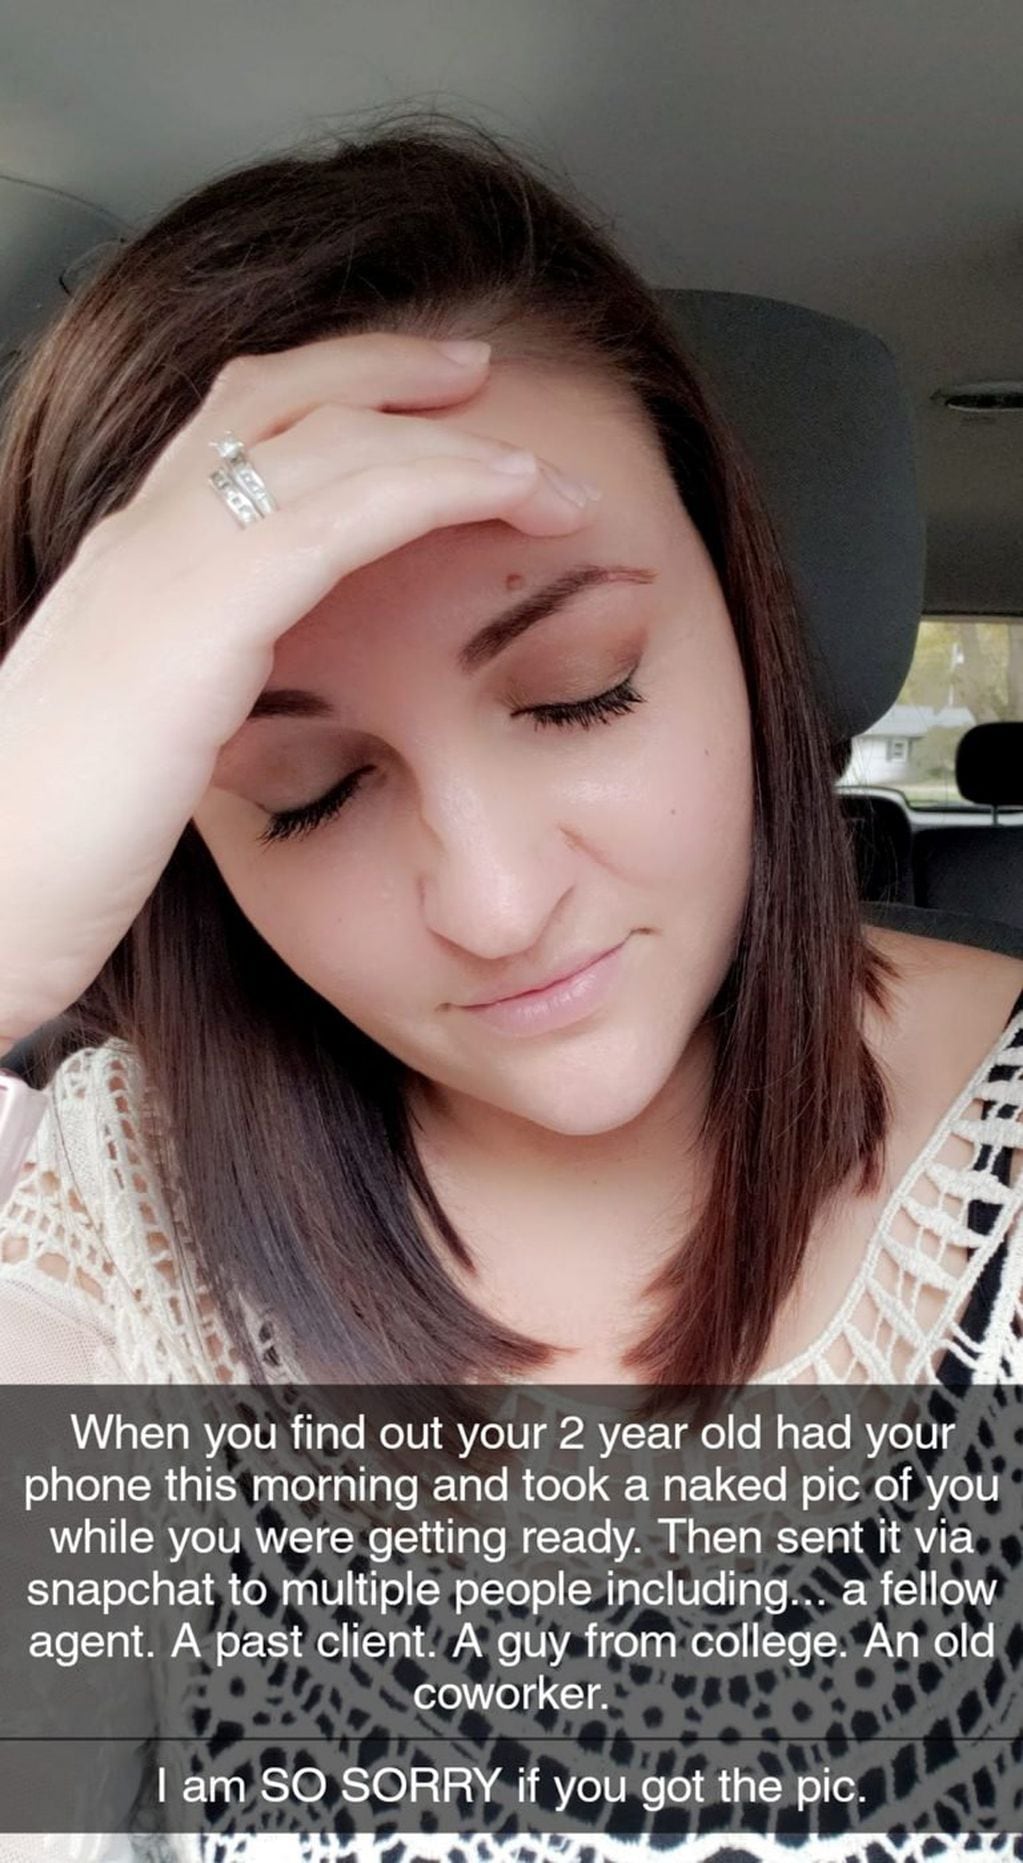 Emily Schmitt publicó una foto en sus redes sociales después de descubrir que su hija había hecho una travesura.